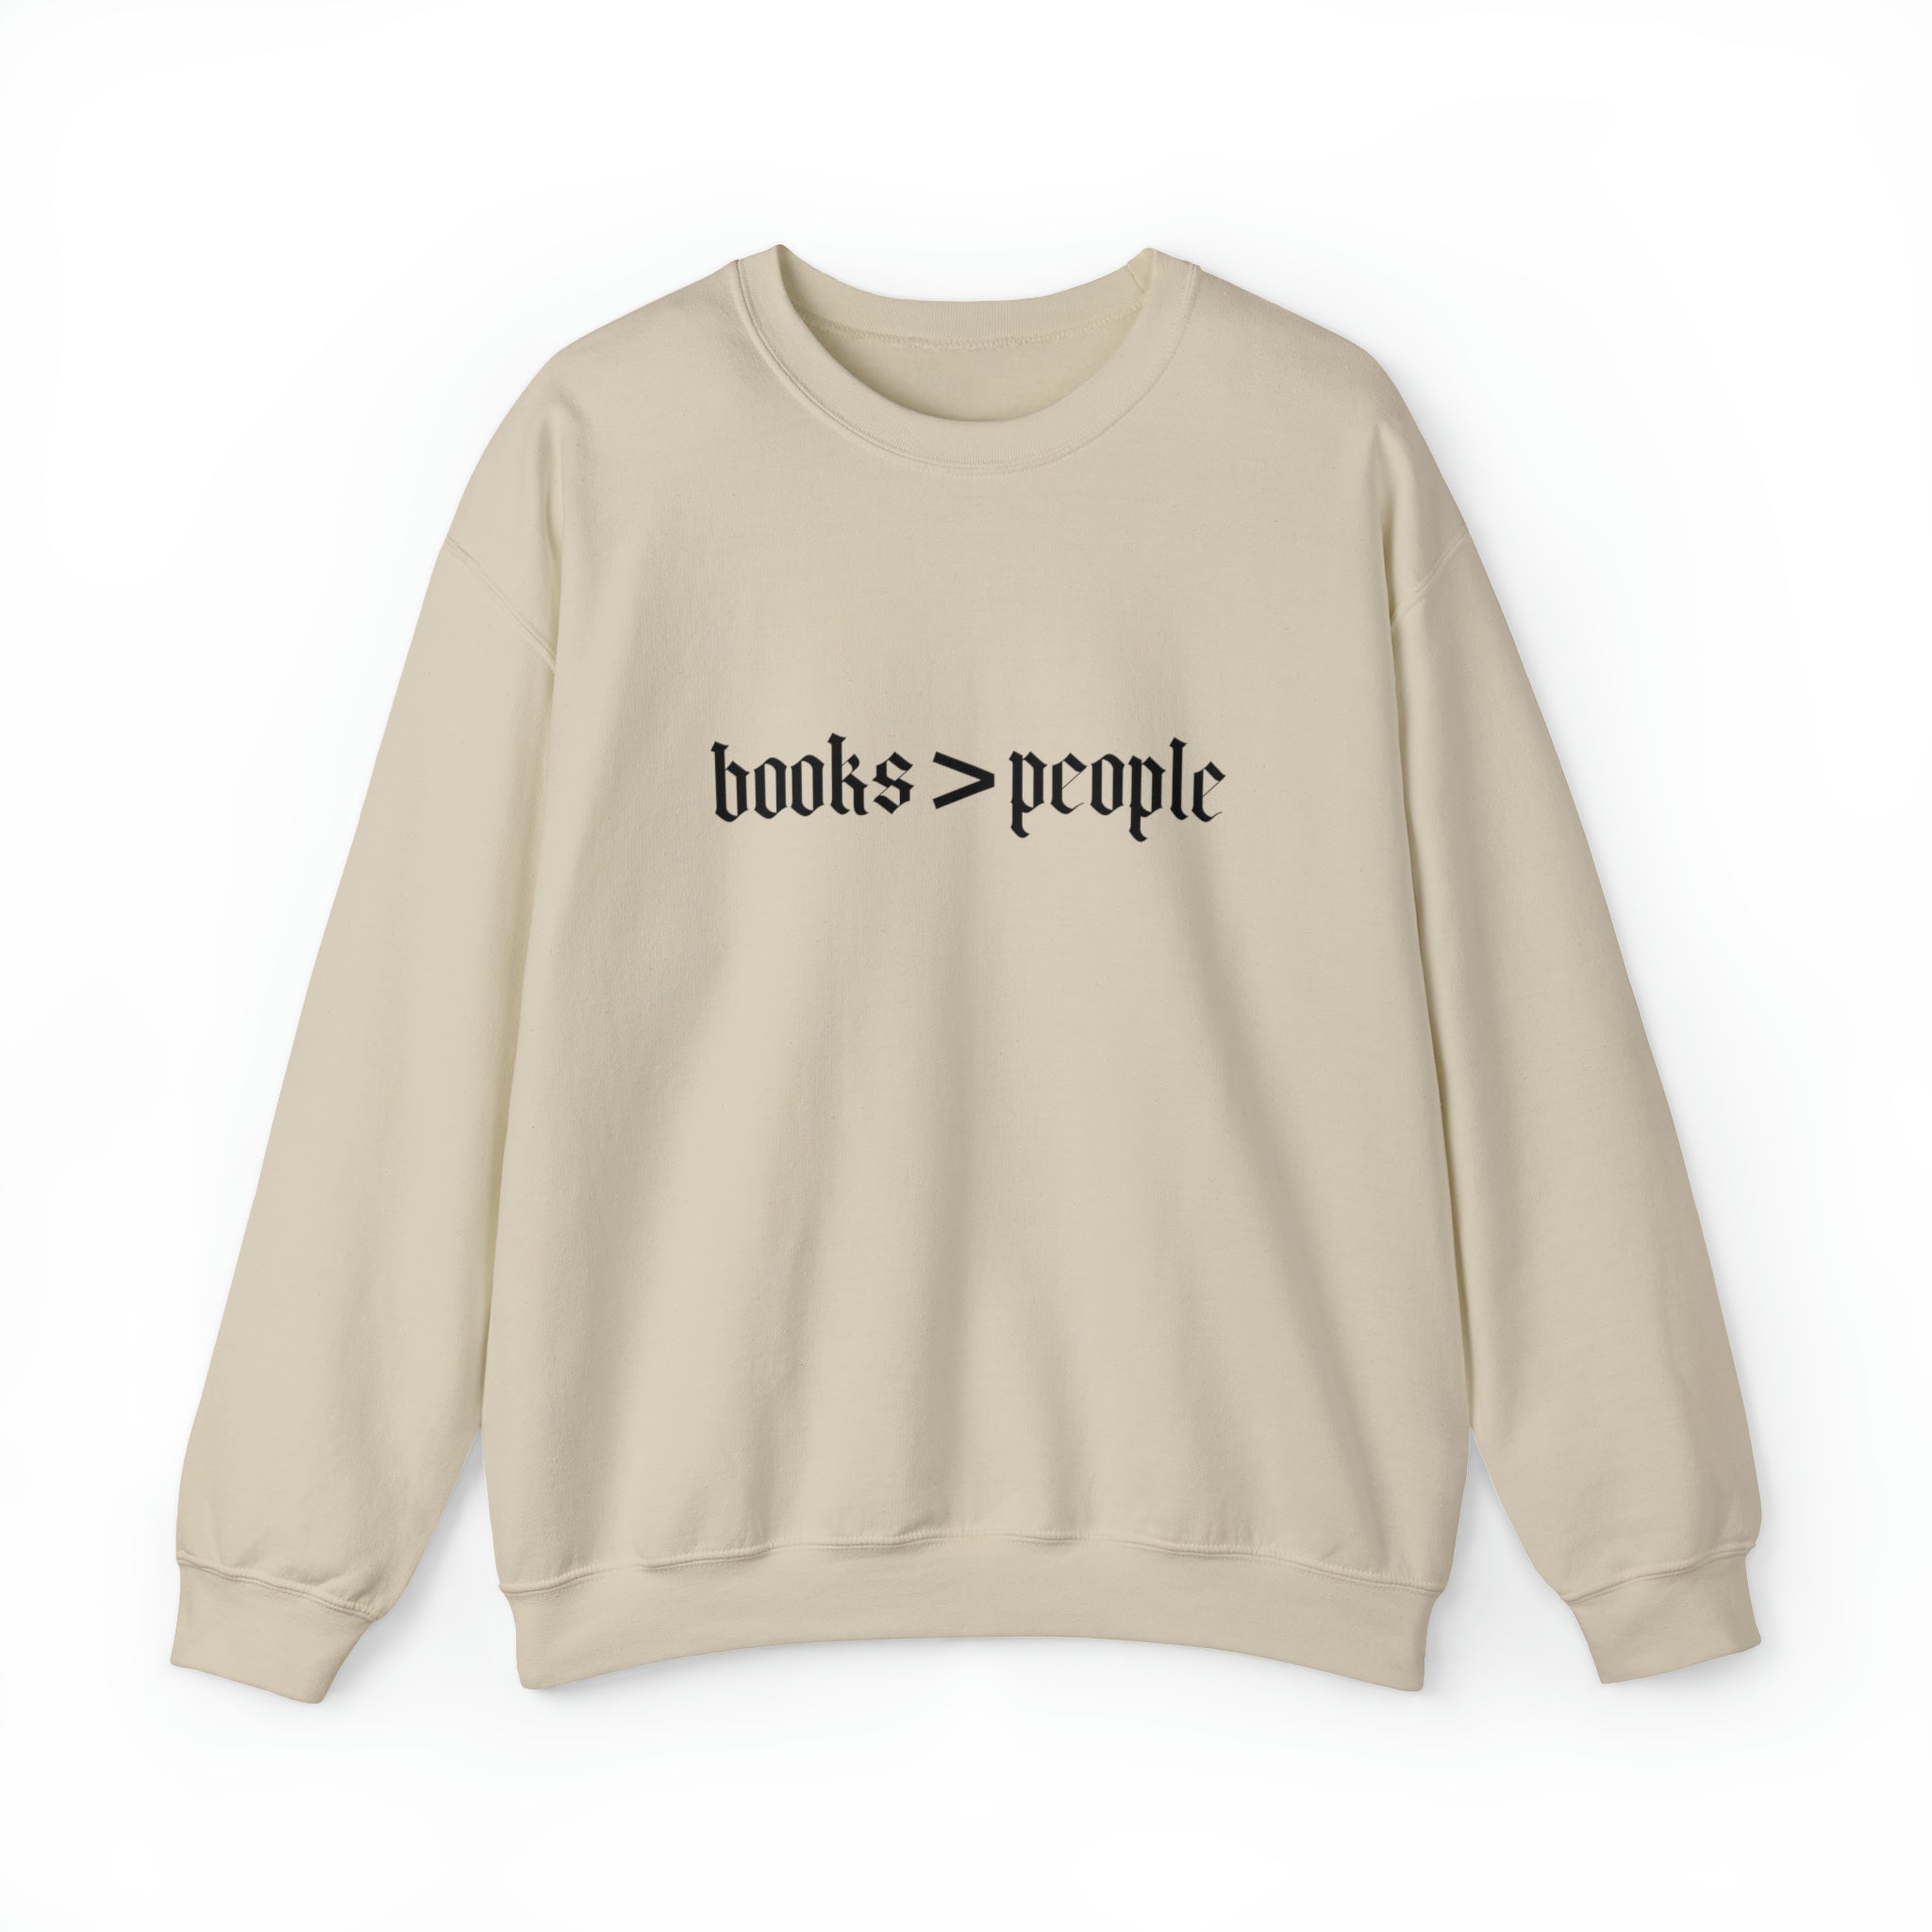 Books Over People Sweatshirt